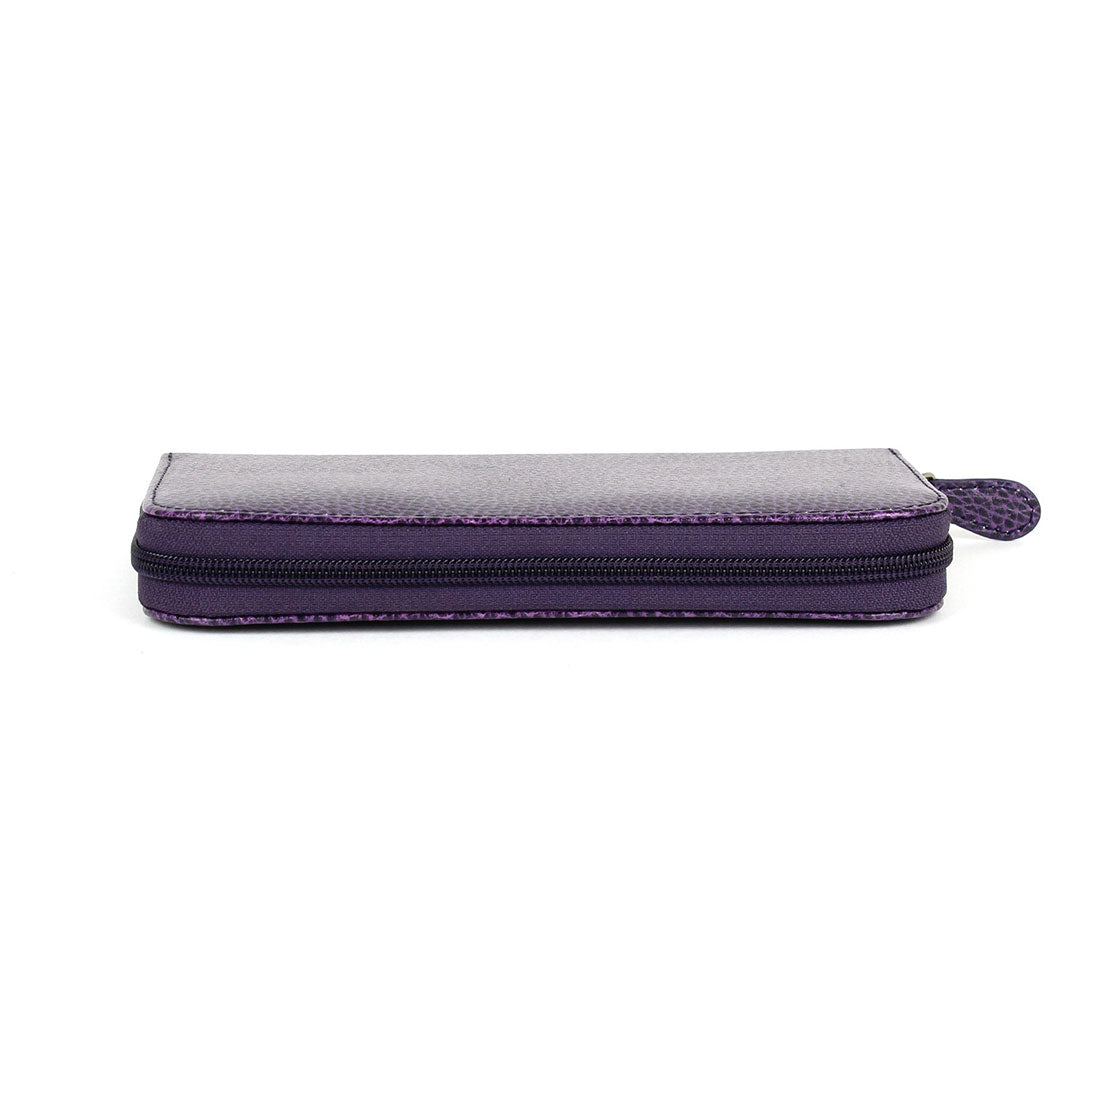 Wallet / Clutch - Violet#color_laurige-violet